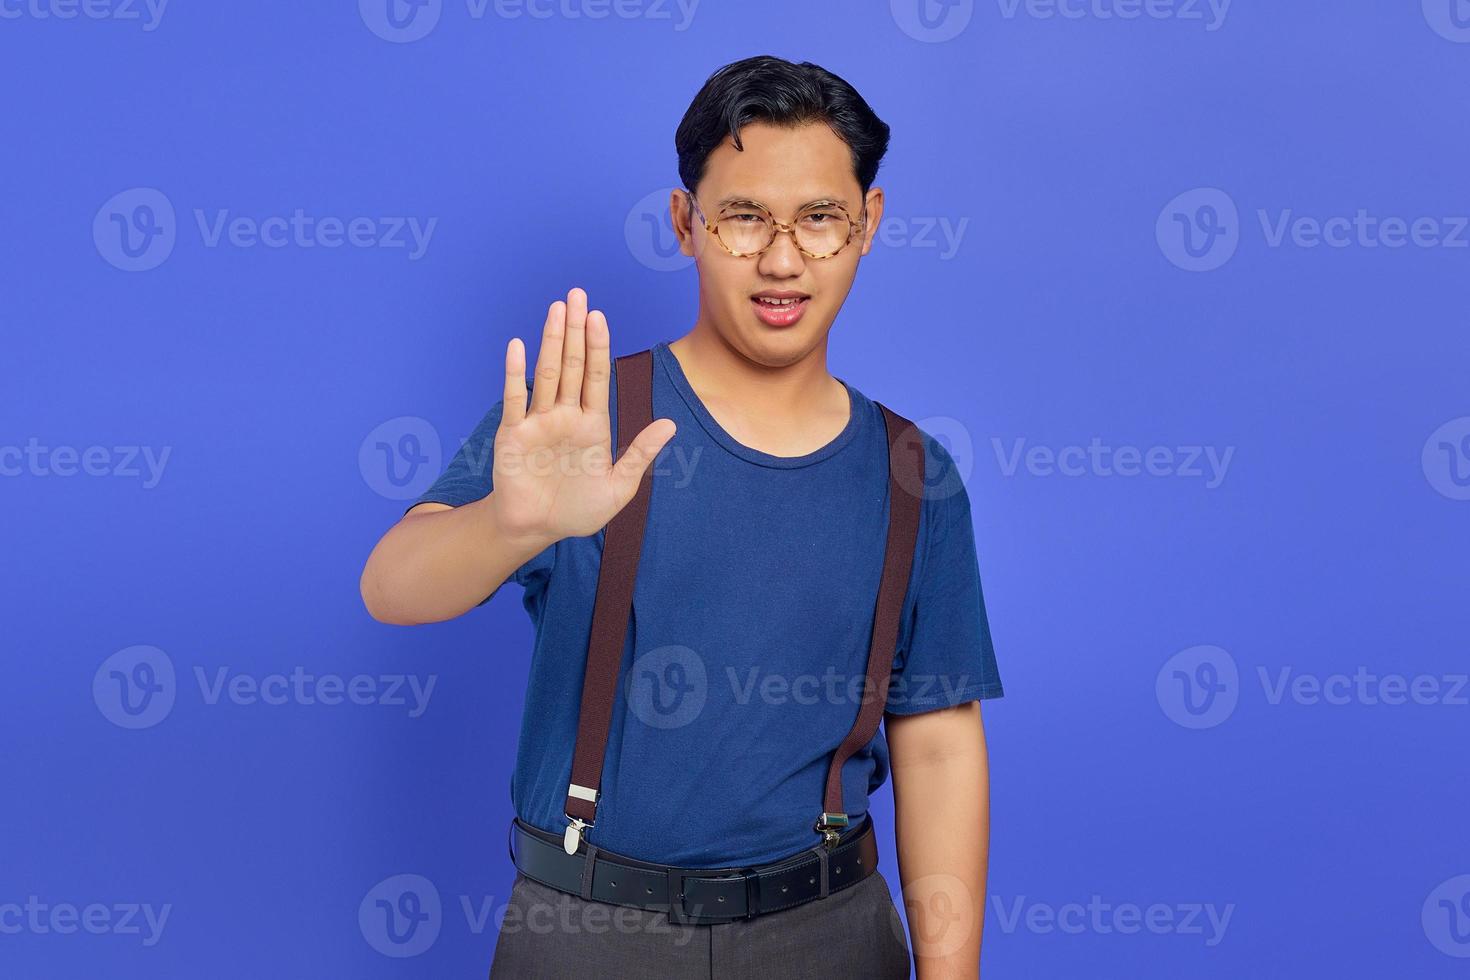 retrato de homem bonito bravo fazendo gesto de parada com as palmas das mãos no fundo roxo foto